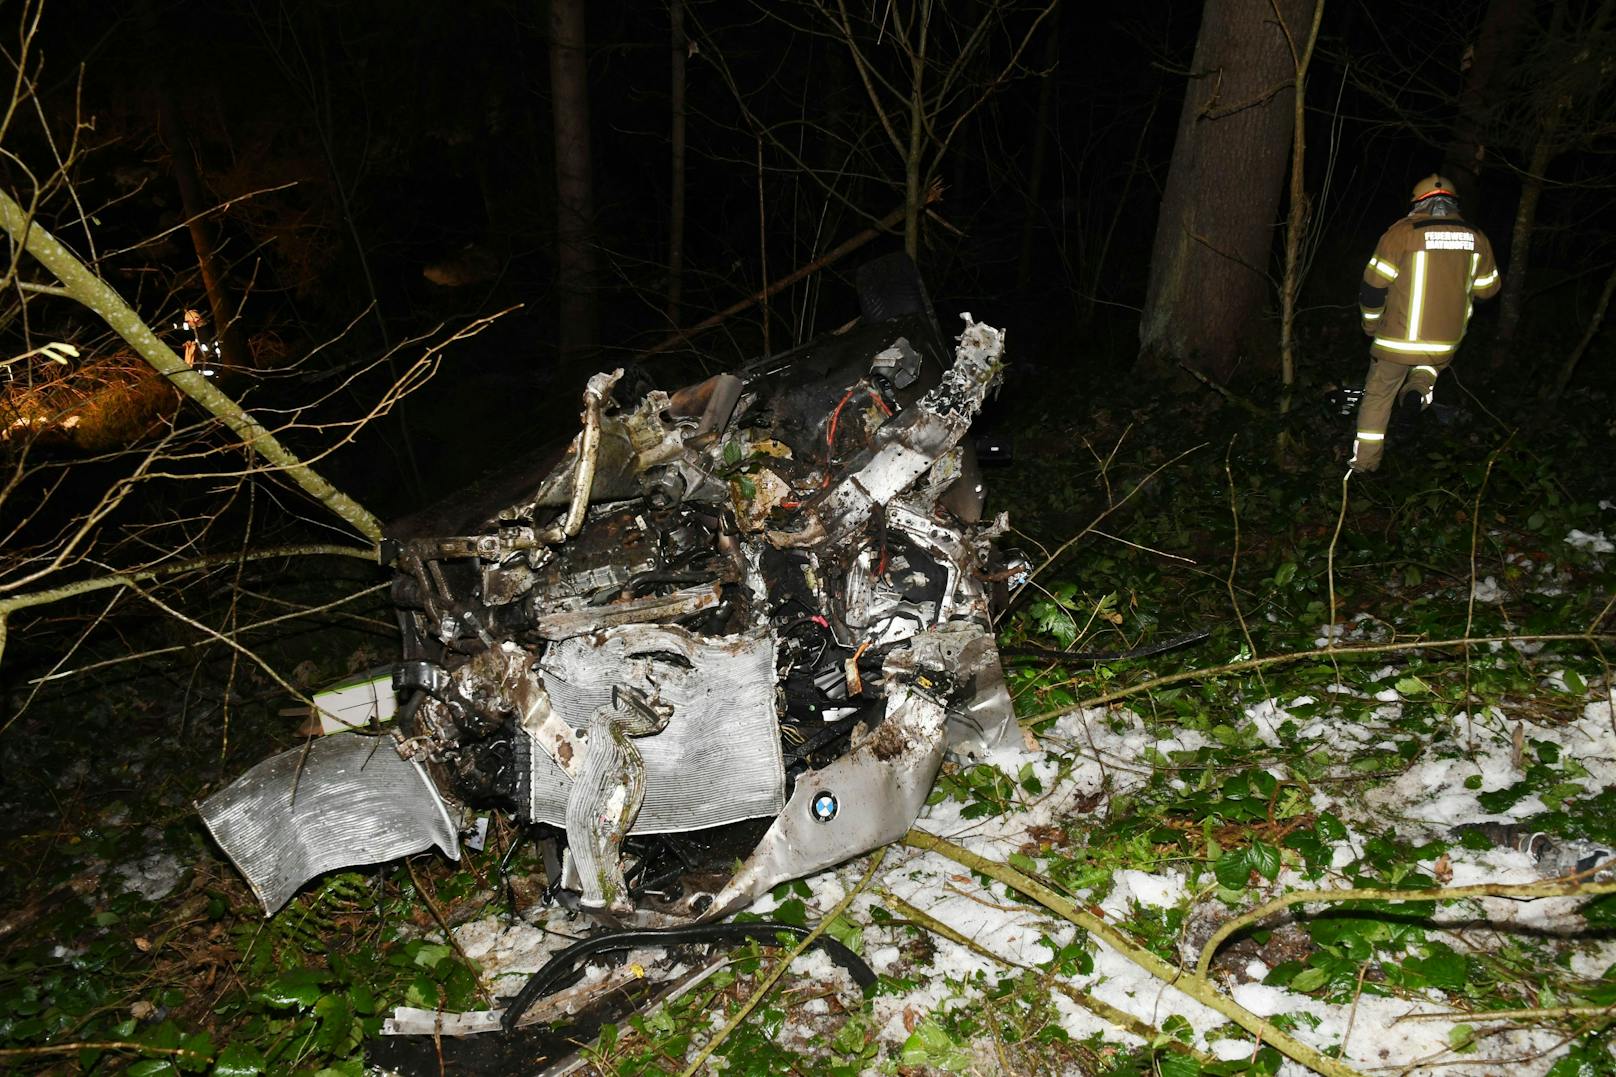 Spektakulärer Crash am Sonntagabend in Tirol: Ein Lenker verlor die Kontrolle über seinen BMW, kam von der Straße ab und durchbrach mehrere Bäume und Verkehrsschilder. Beide Insassen wurden schwer verletzt.